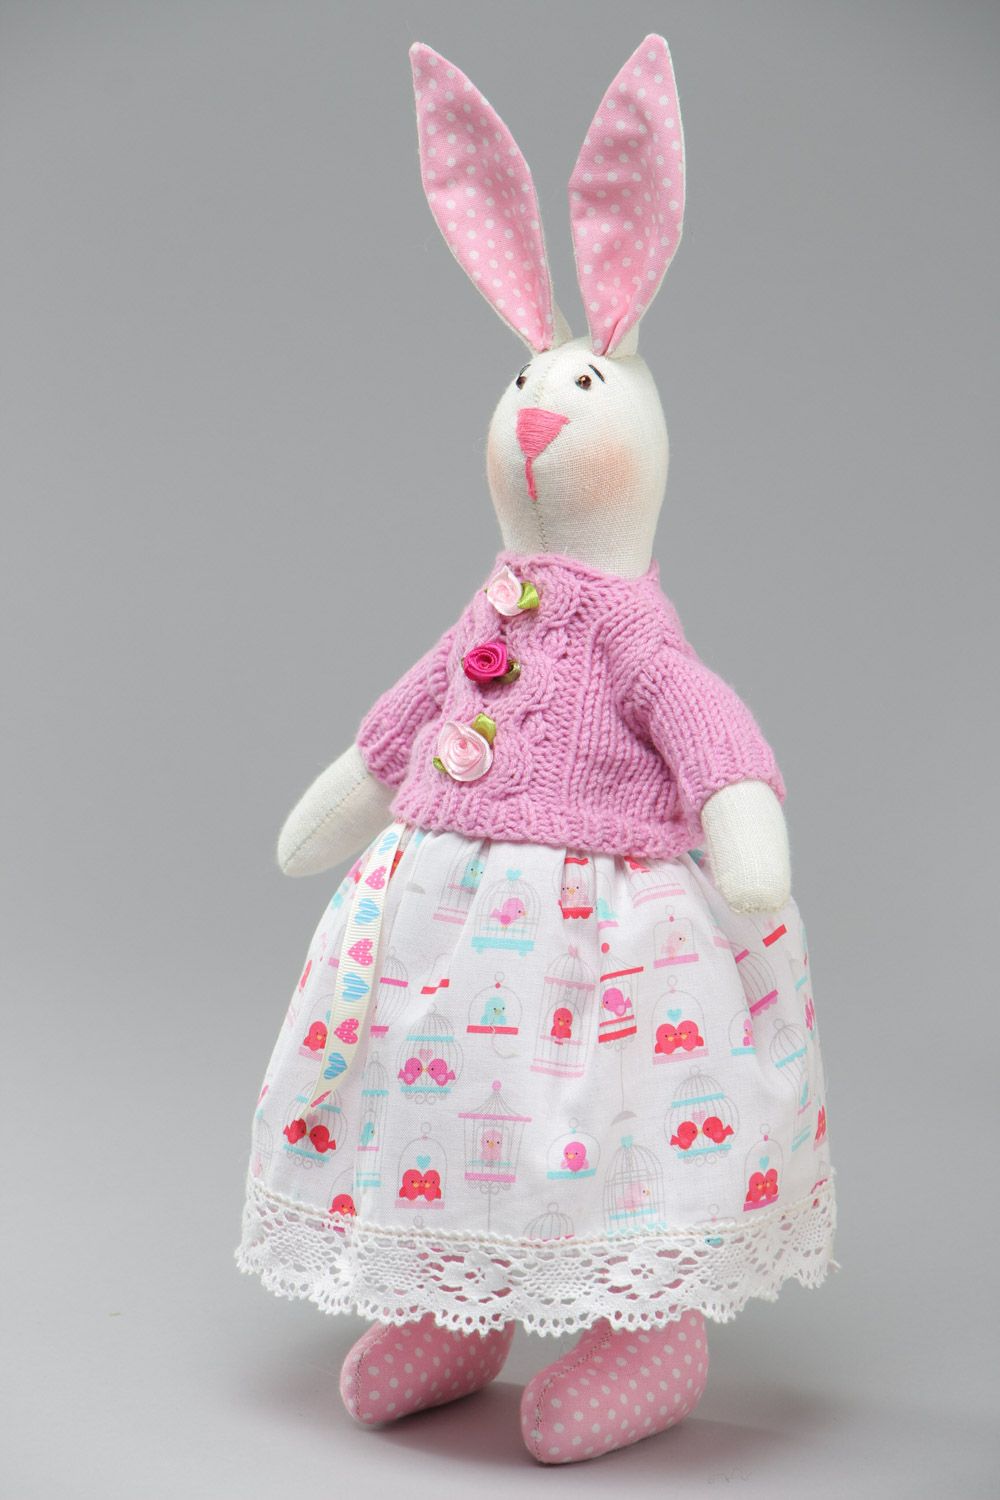 Textil Kuscheltier Hase im rosa Trägerkleid handmade für Kinder schön foto 2